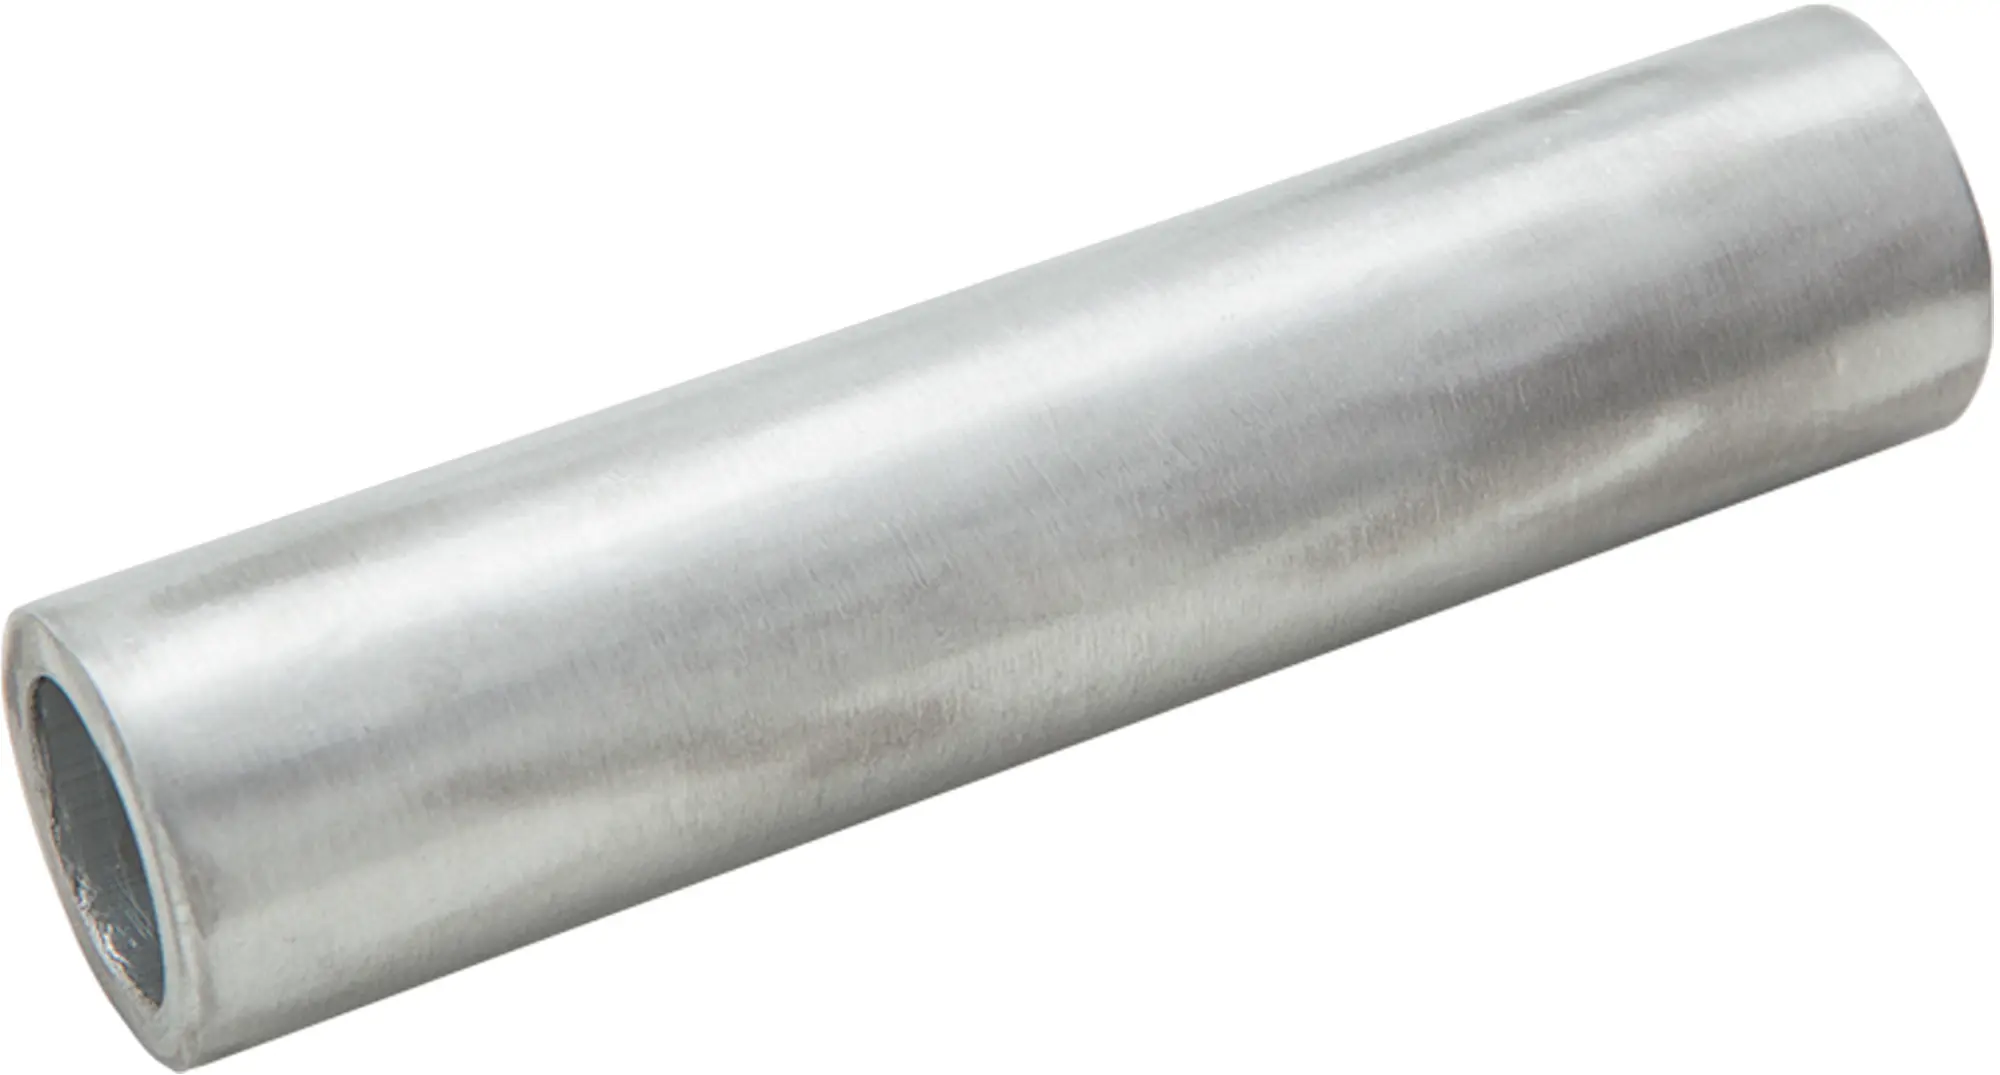 Гильза кабельная луженая Duwi ГМЛ 4-3 мм медь 5 шт. гильза кабельная луженая duwi гмл 4 3 мм медь 5 шт